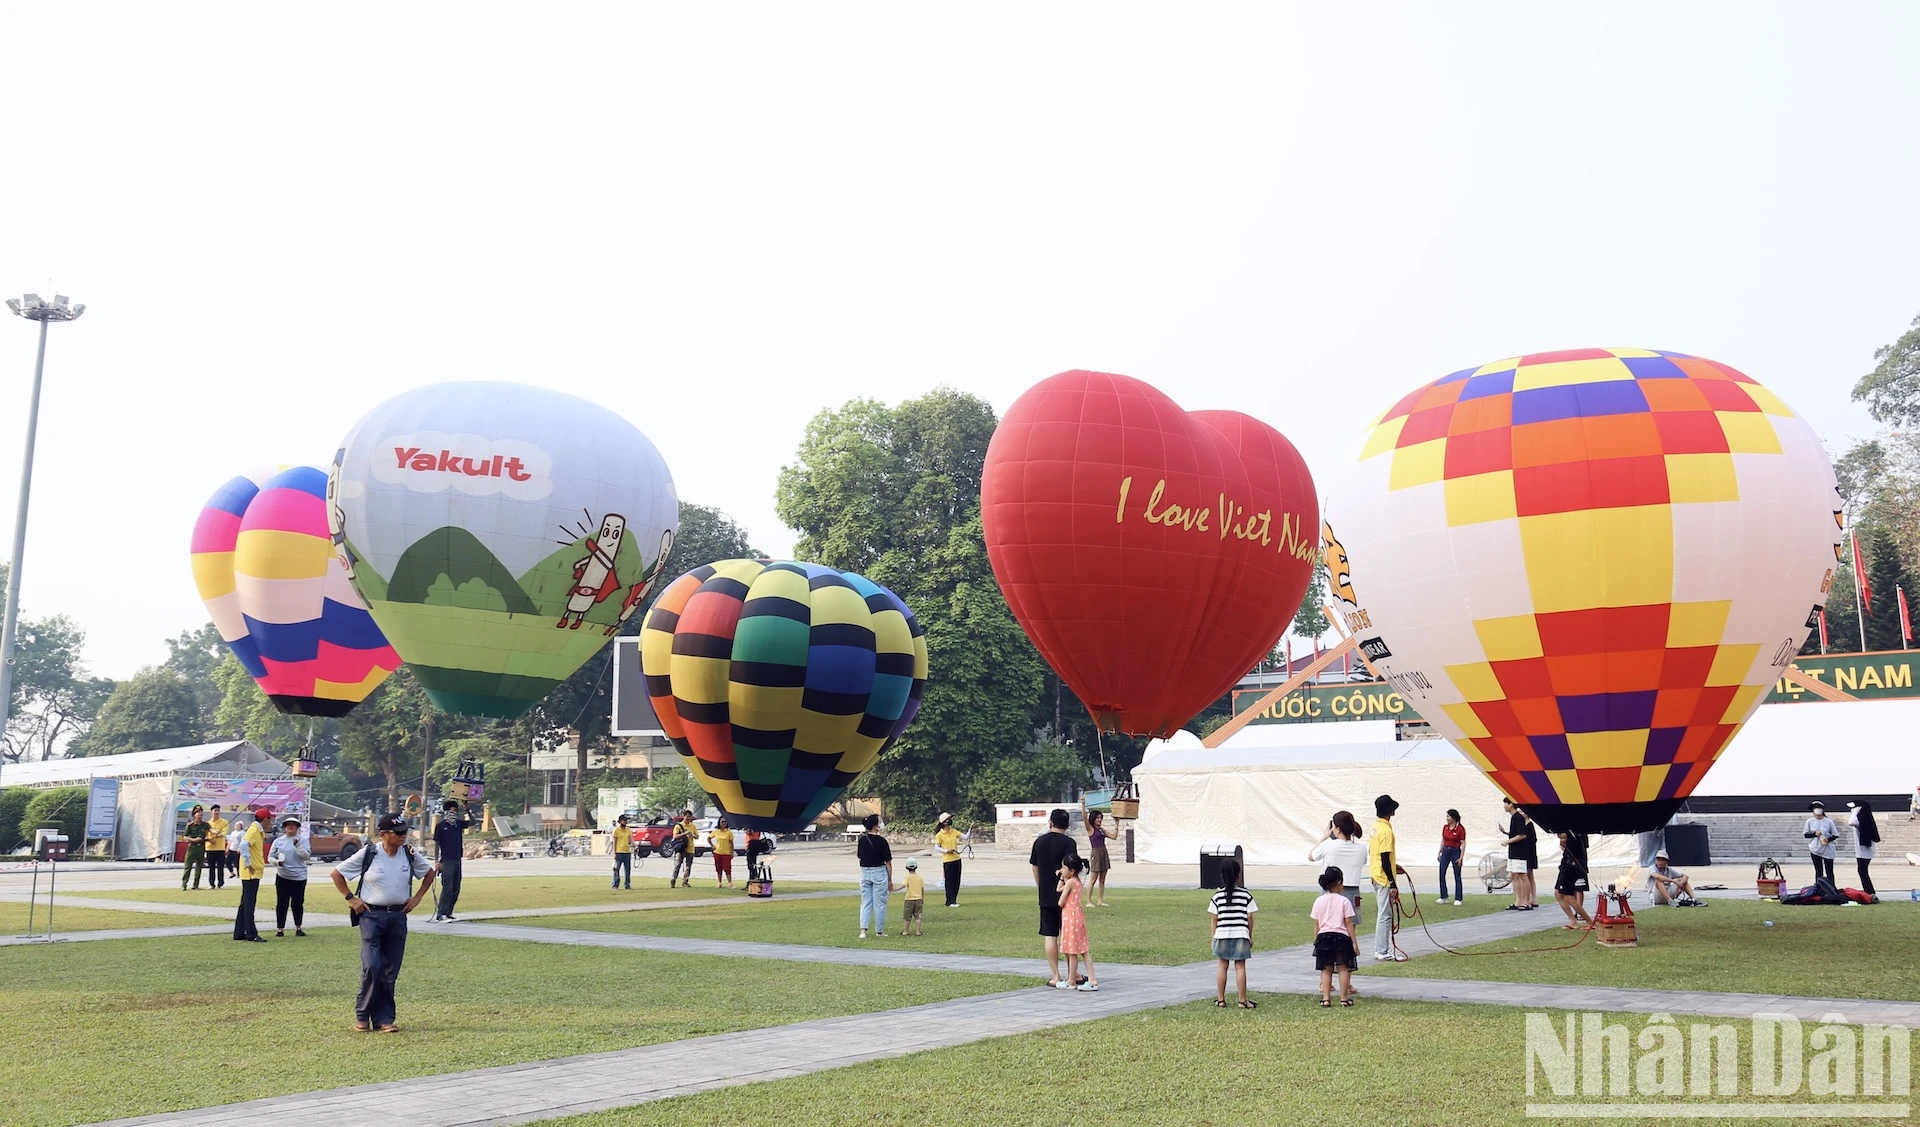 [Фото] Посетите крупнейший во Вьетнаме международный фестиваль воздушных шаров. Фото 1.